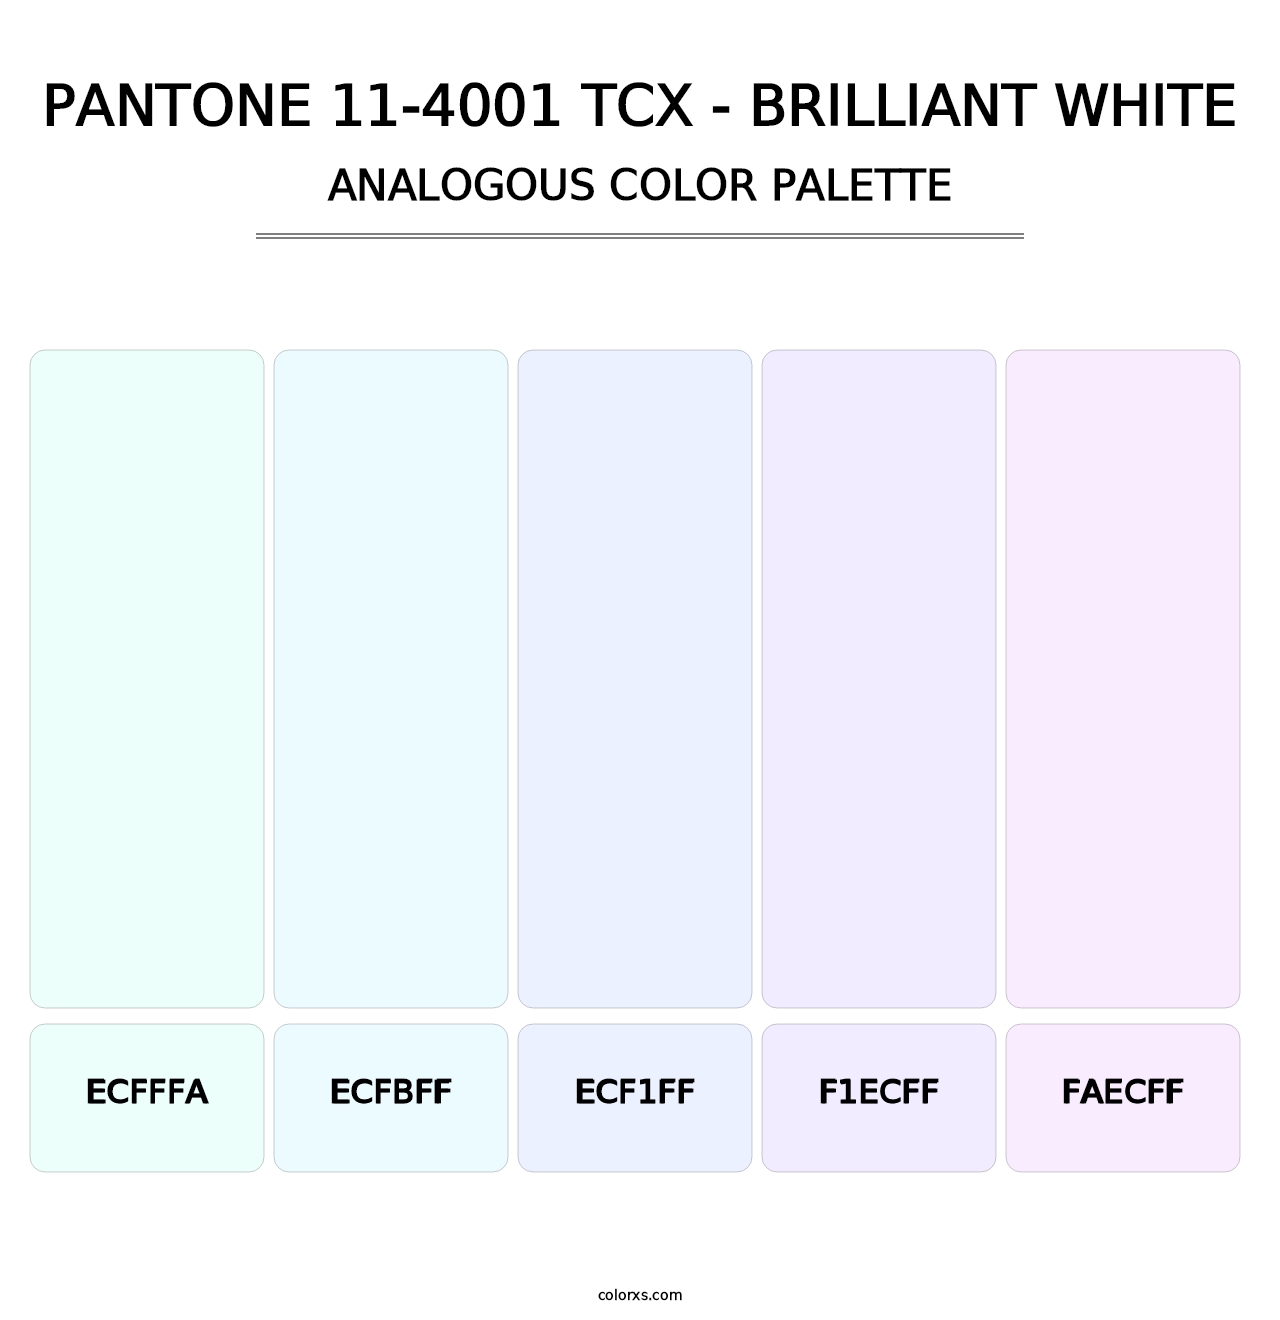 PANTONE 11-4001 TCX - Brilliant White - Analogous Color Palette